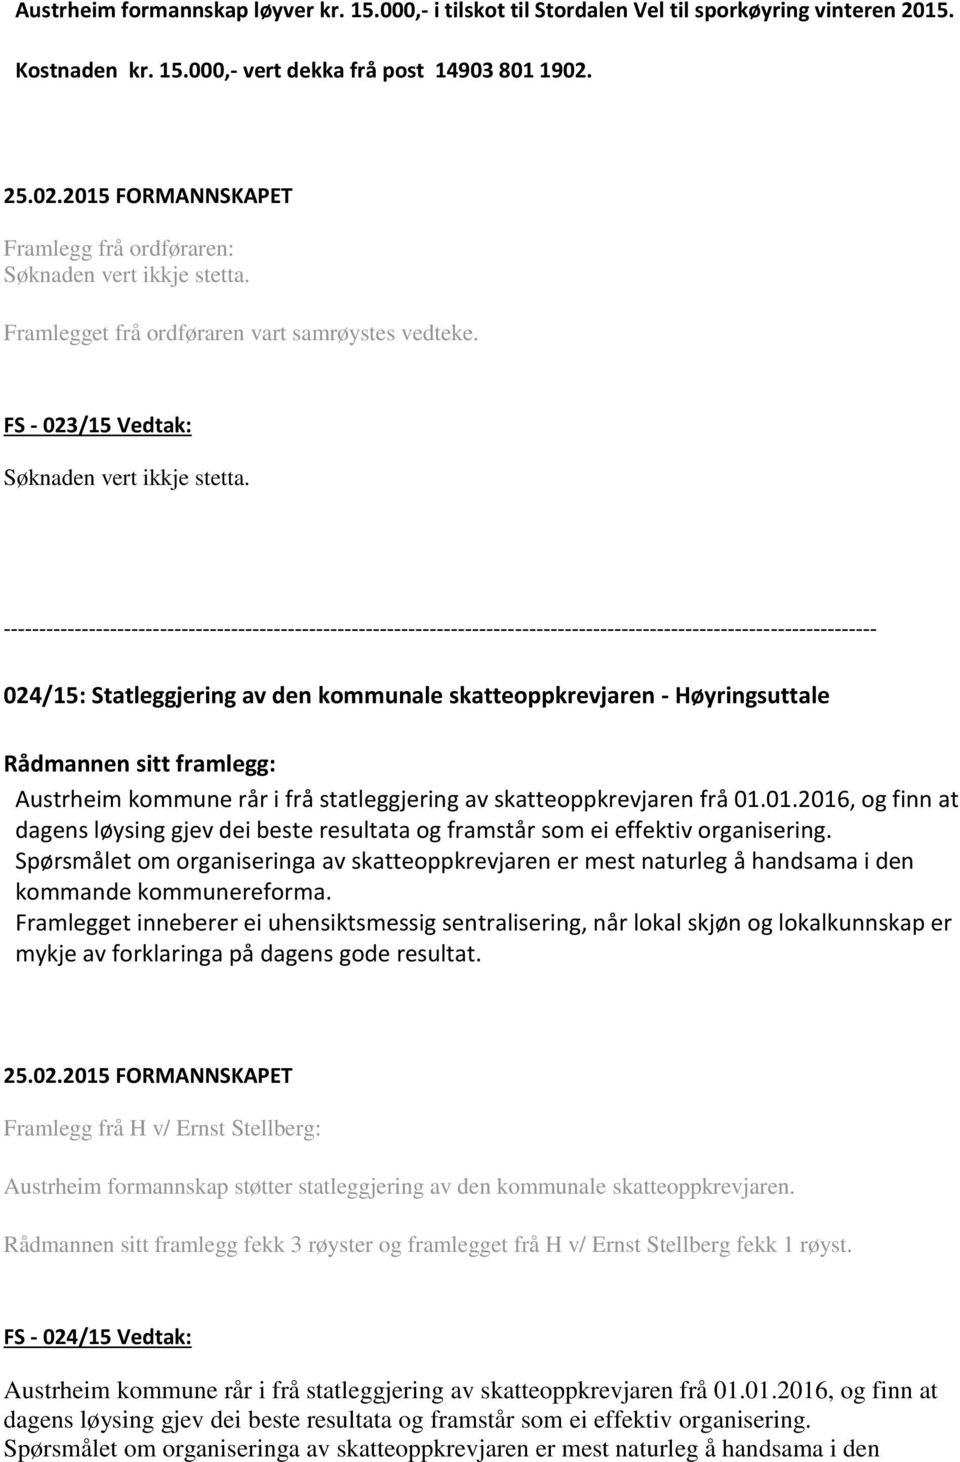 024/15: Statleggjering av den kommunale skatteoppkrevjaren - Høyringsuttale Austrheim kommune rår i frå statleggjering av skatteoppkrevjaren frå 01.